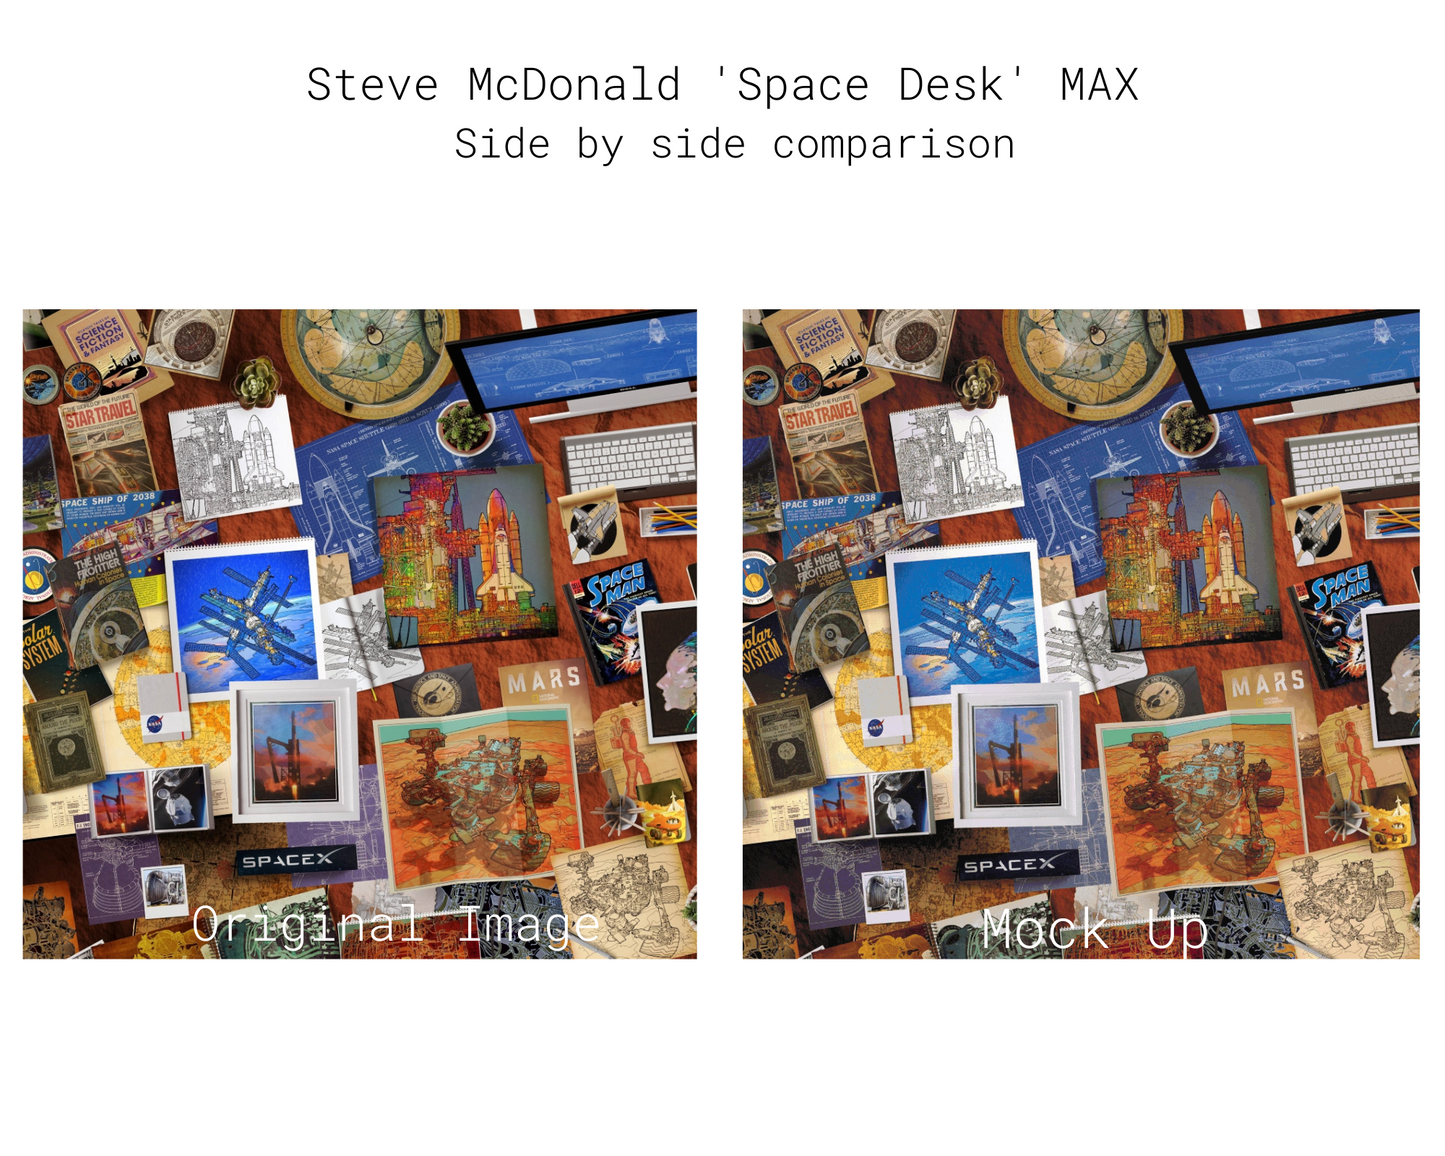 Space Desk MAX